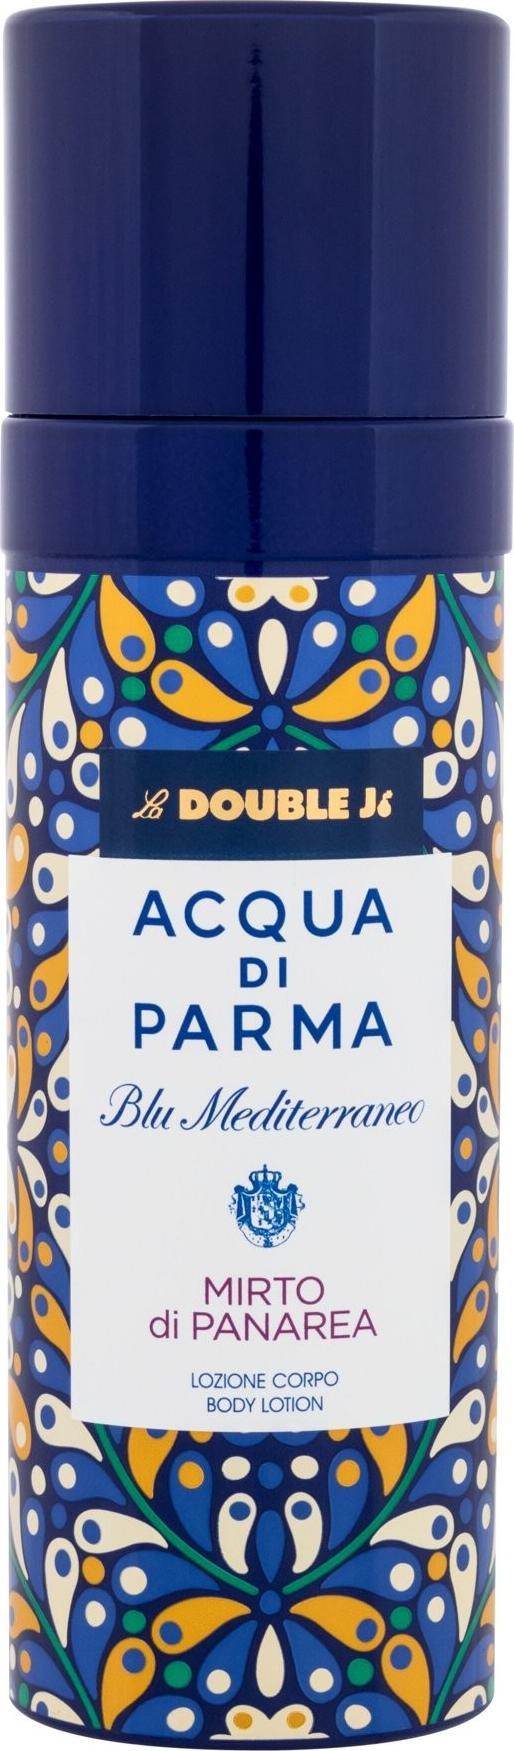 Acqua Di Parma Lotiune de corp Blu Mediterraneo Mirto Di Panarea 150ml